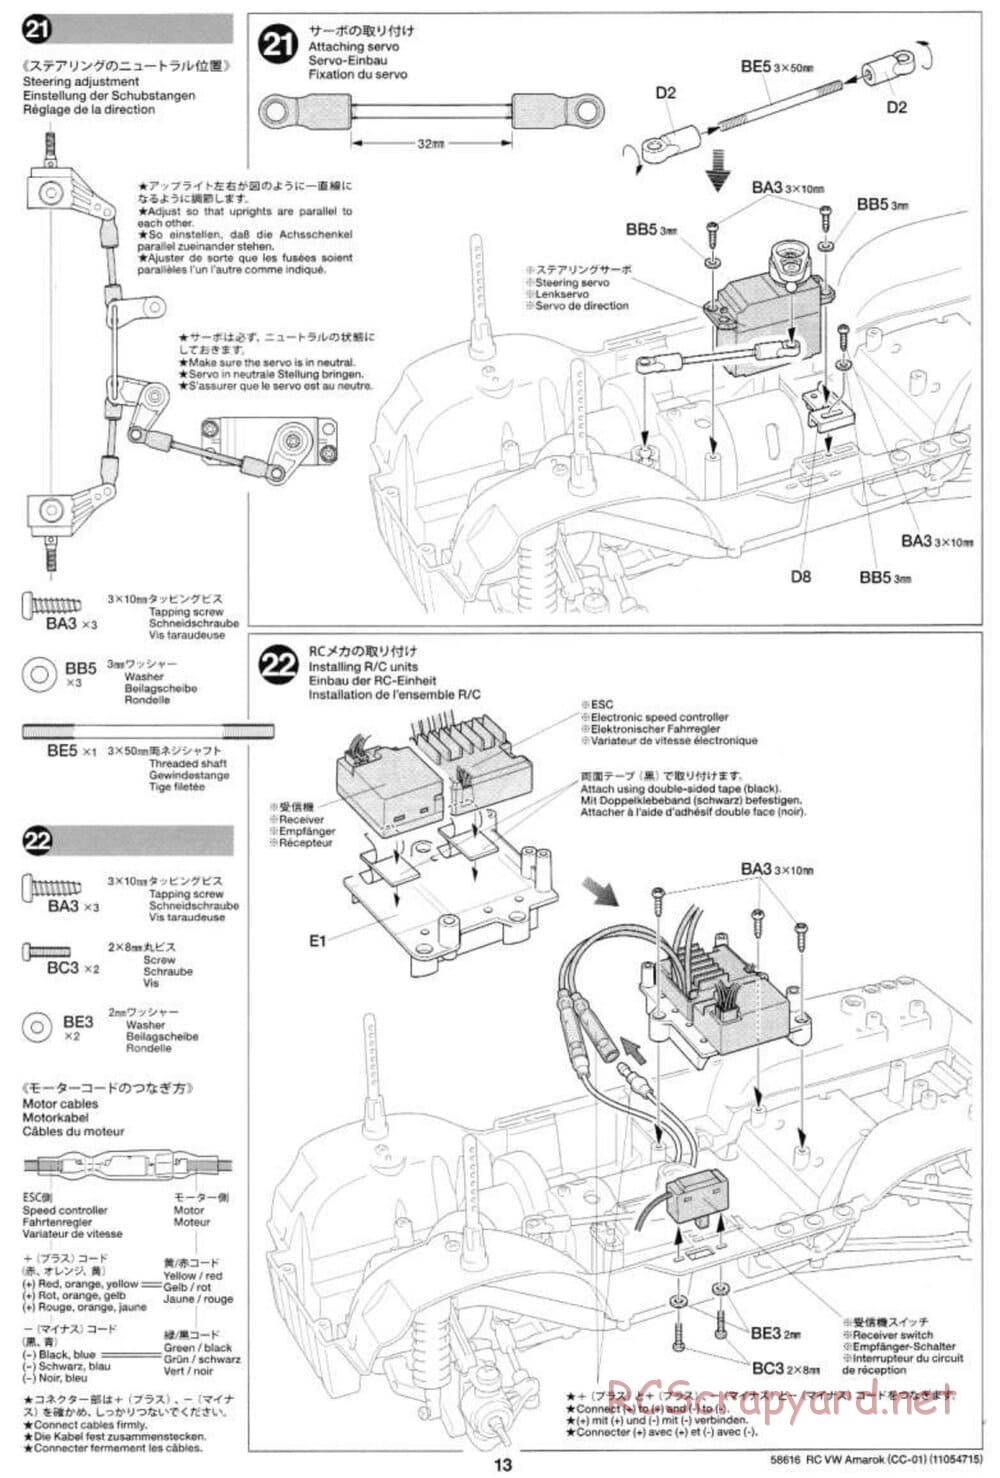 Tamiya - Volkswagen Amarok - CC-01 Chassis - Manual - Page 13